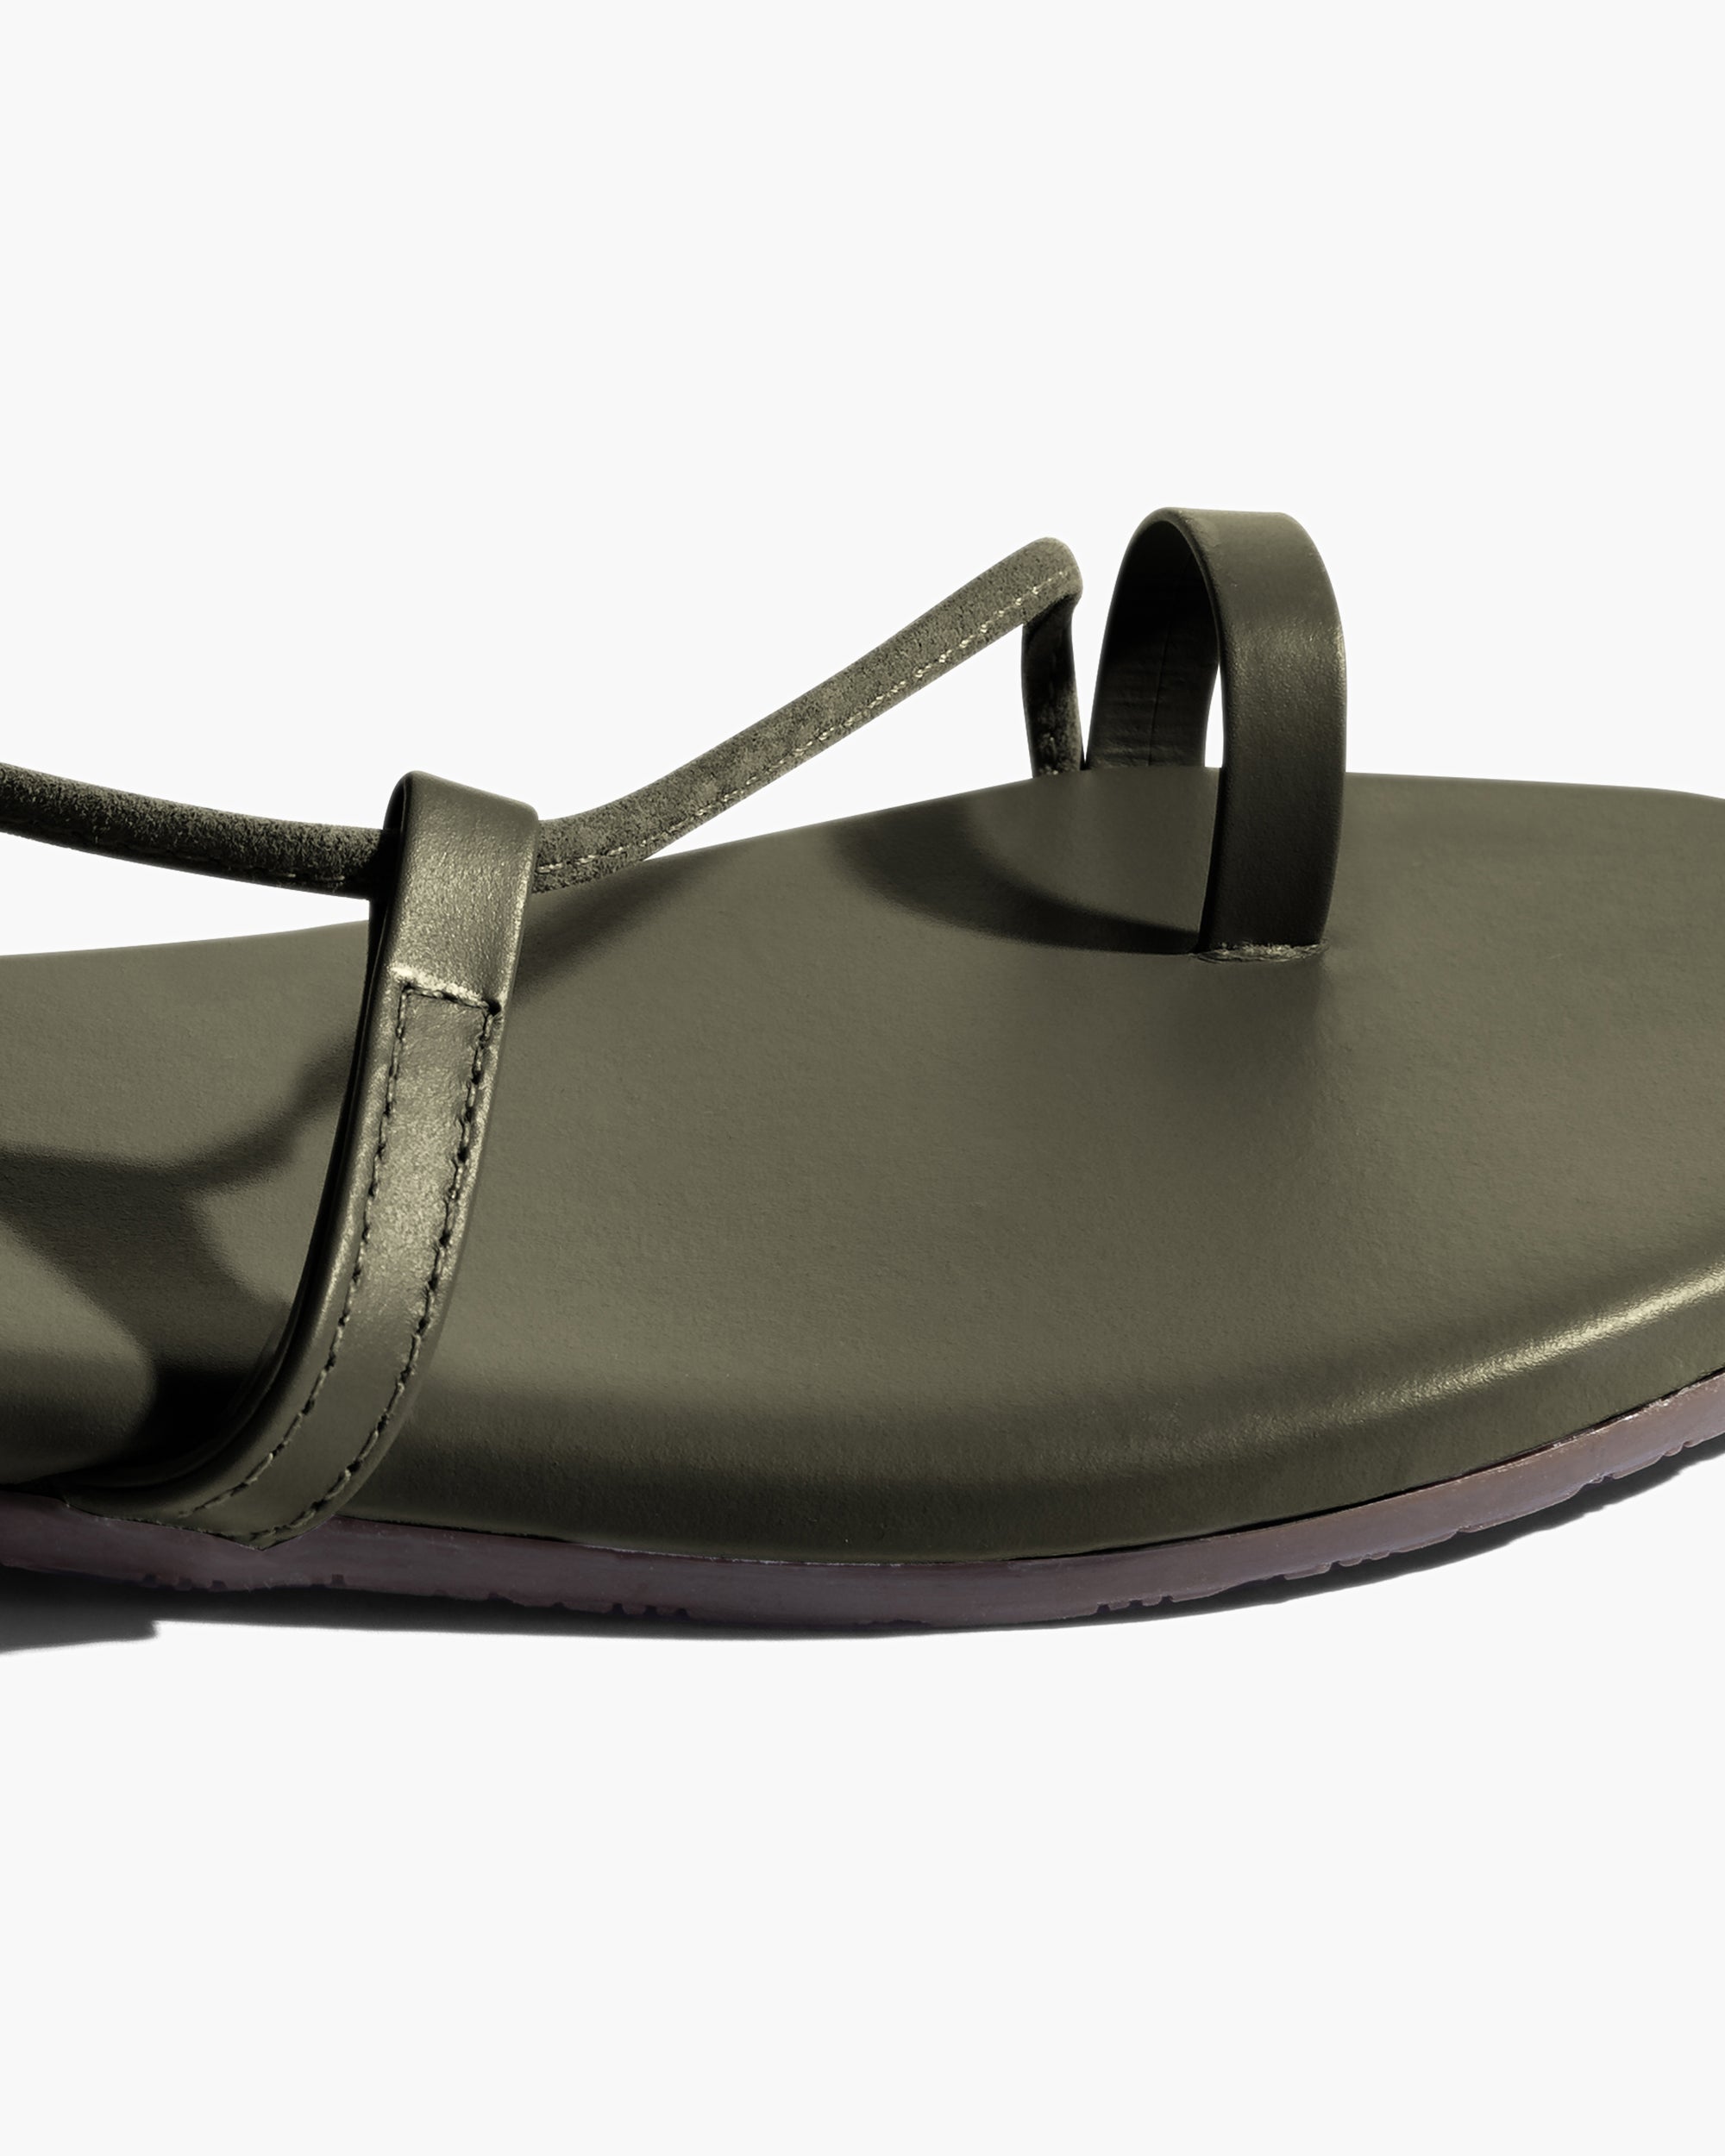 TKEES Jo Women's Sandals Olive | DKV170492